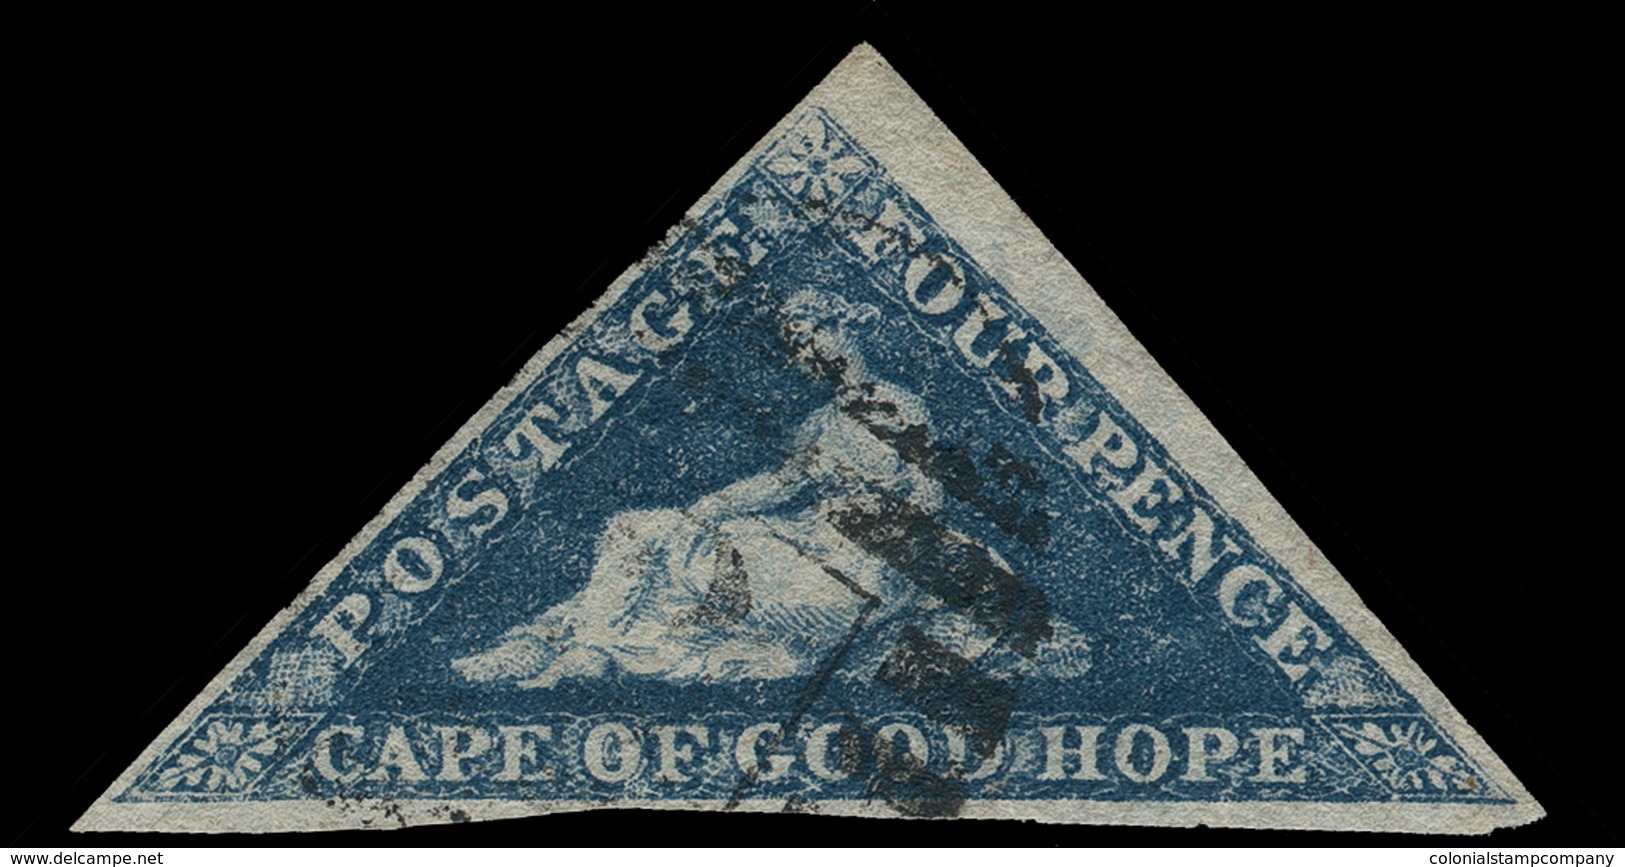 O Cape Of Good Hope - Lot No.474 - Cap De Bonne Espérance (1853-1904)